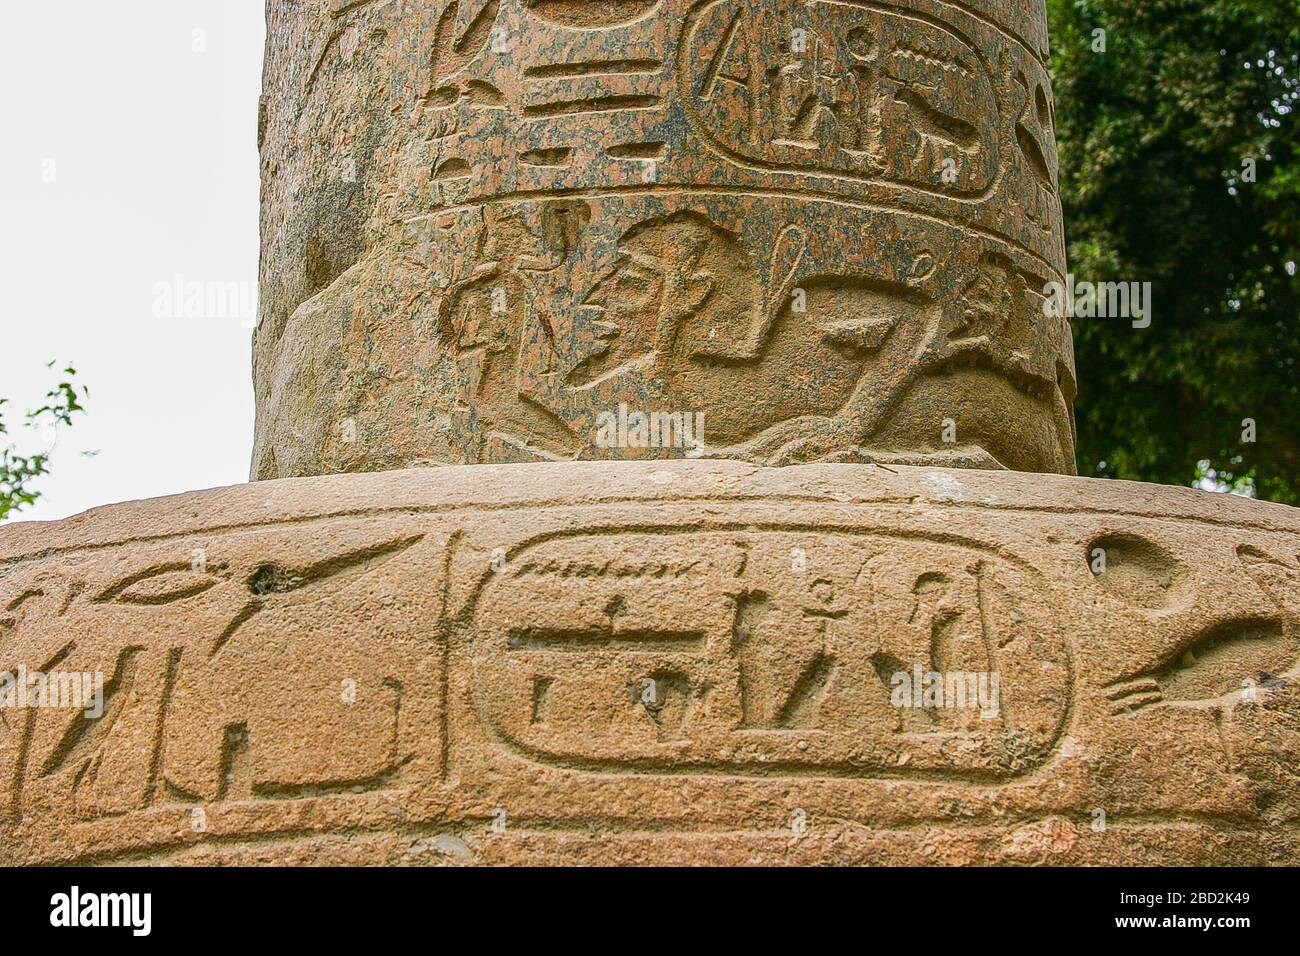 Ägypten, Kairo, Heliopolis, die Gedenksäule des Königs Merenptah. Foto aufgenommen 2007, bevor die Säule demontiert wurde. Der Sockel ist aus Quarzit. Stockfoto